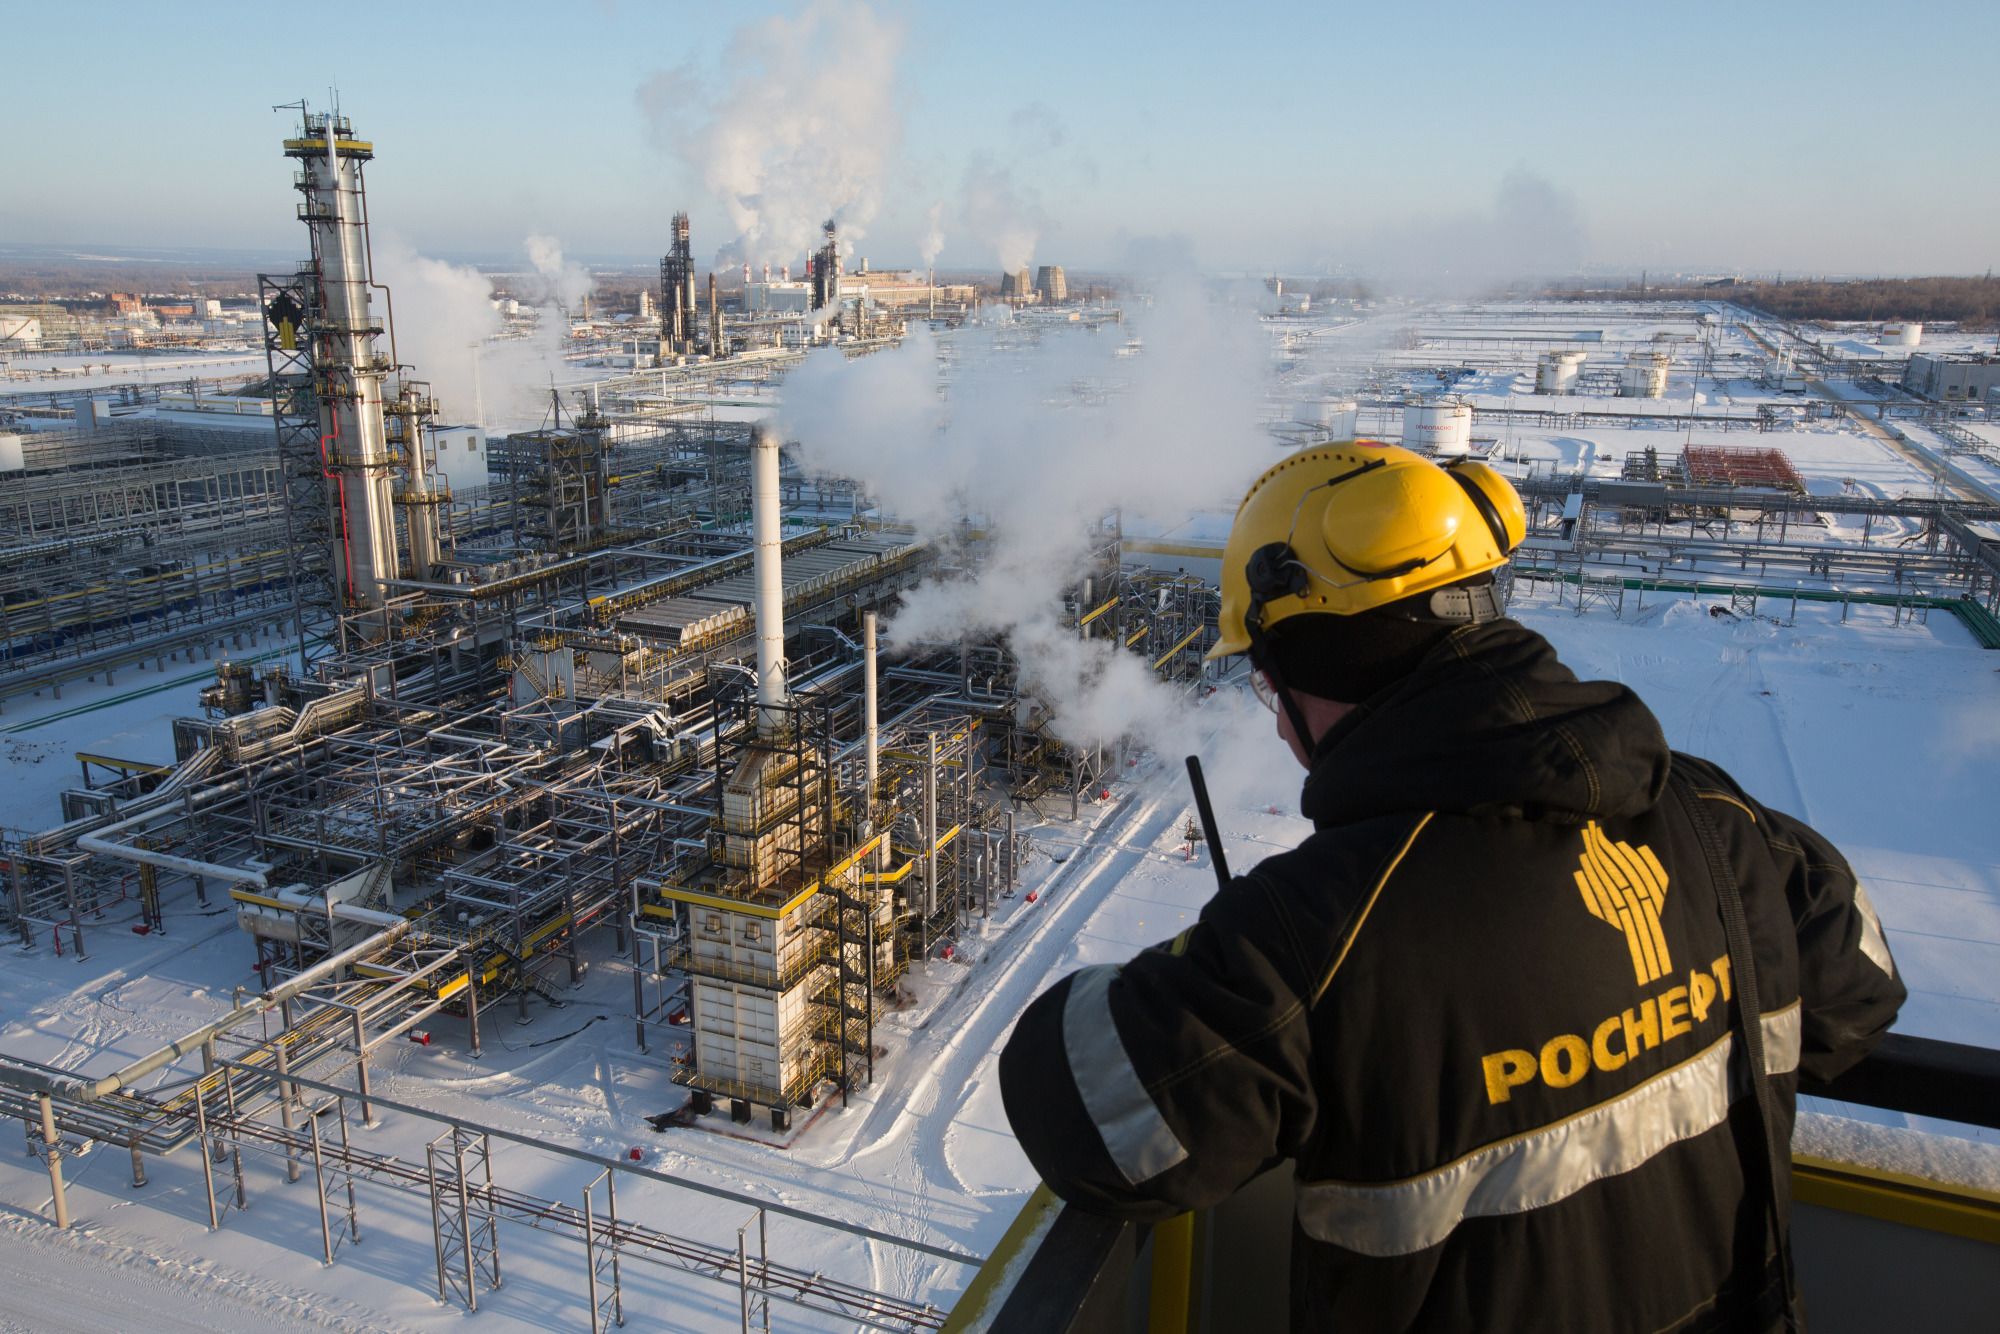 Russland warnt vor Vergeltungsmaßnahmen gegen G7-Ölpreisobergrenze – dies die Weltmarktpreise in die Höhe treiben